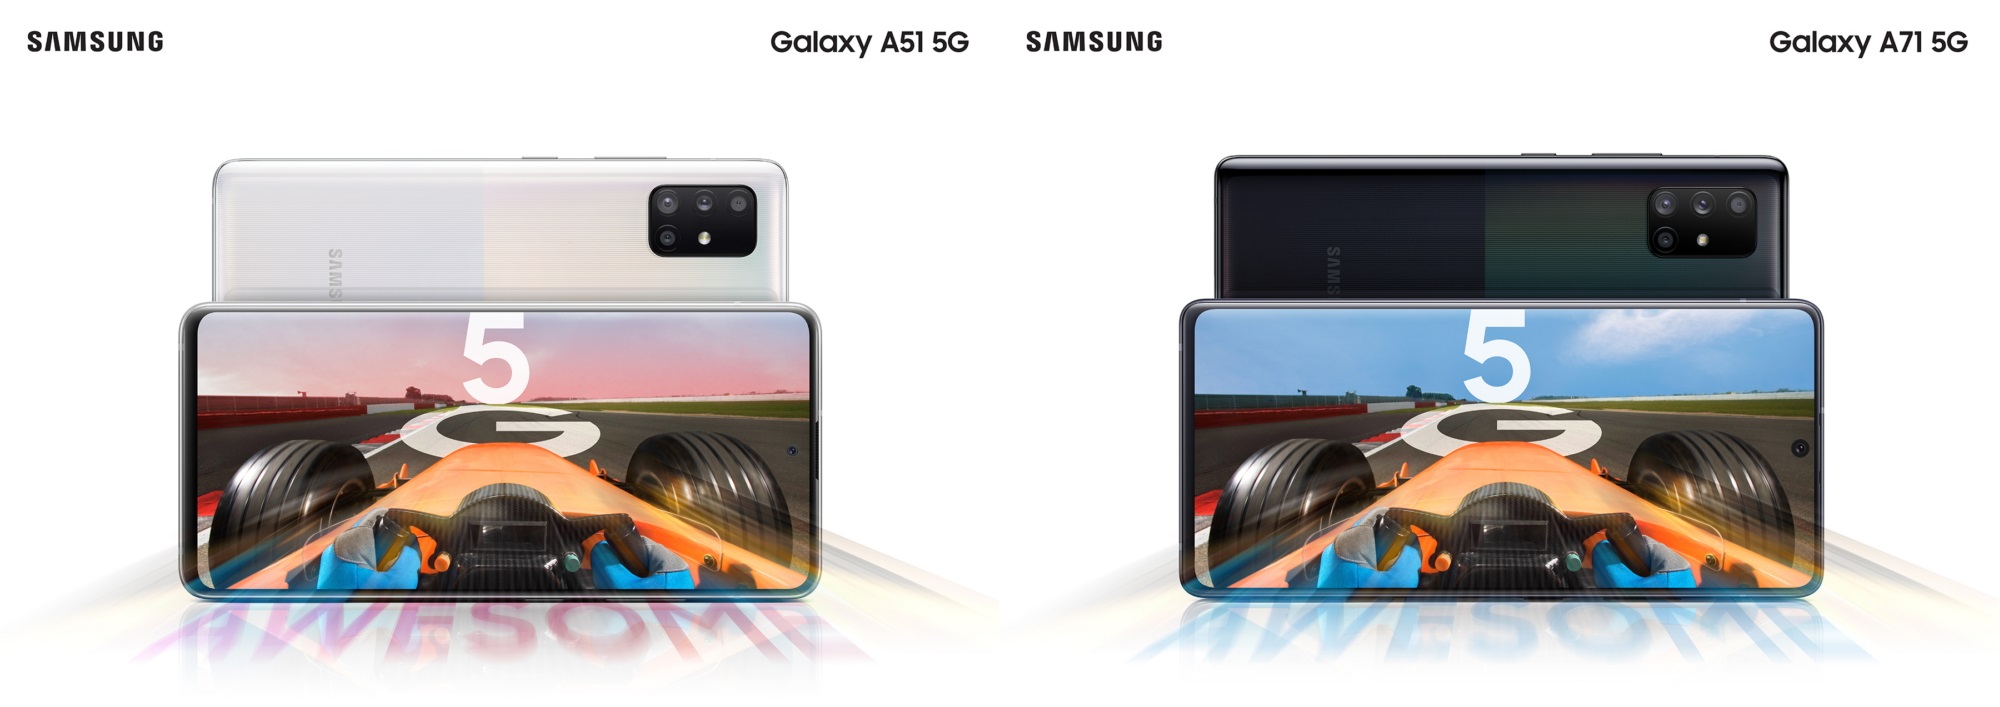 Samsung Galaxy A51 5G & Galaxy A71 5G smartphone